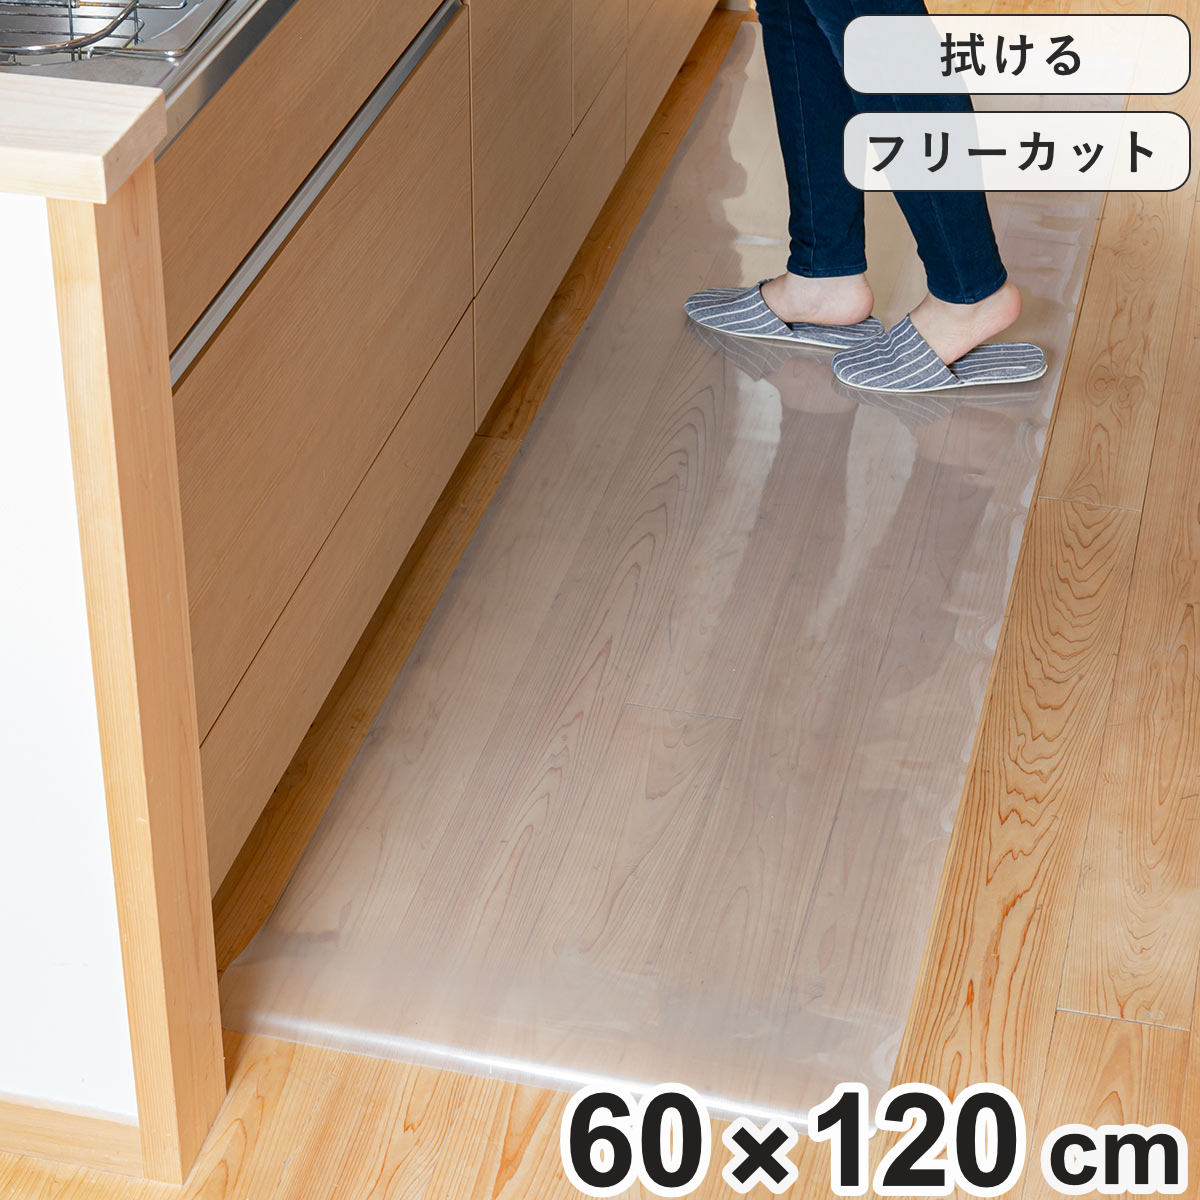 キッチンマット 拭ける 60×120cm クリア